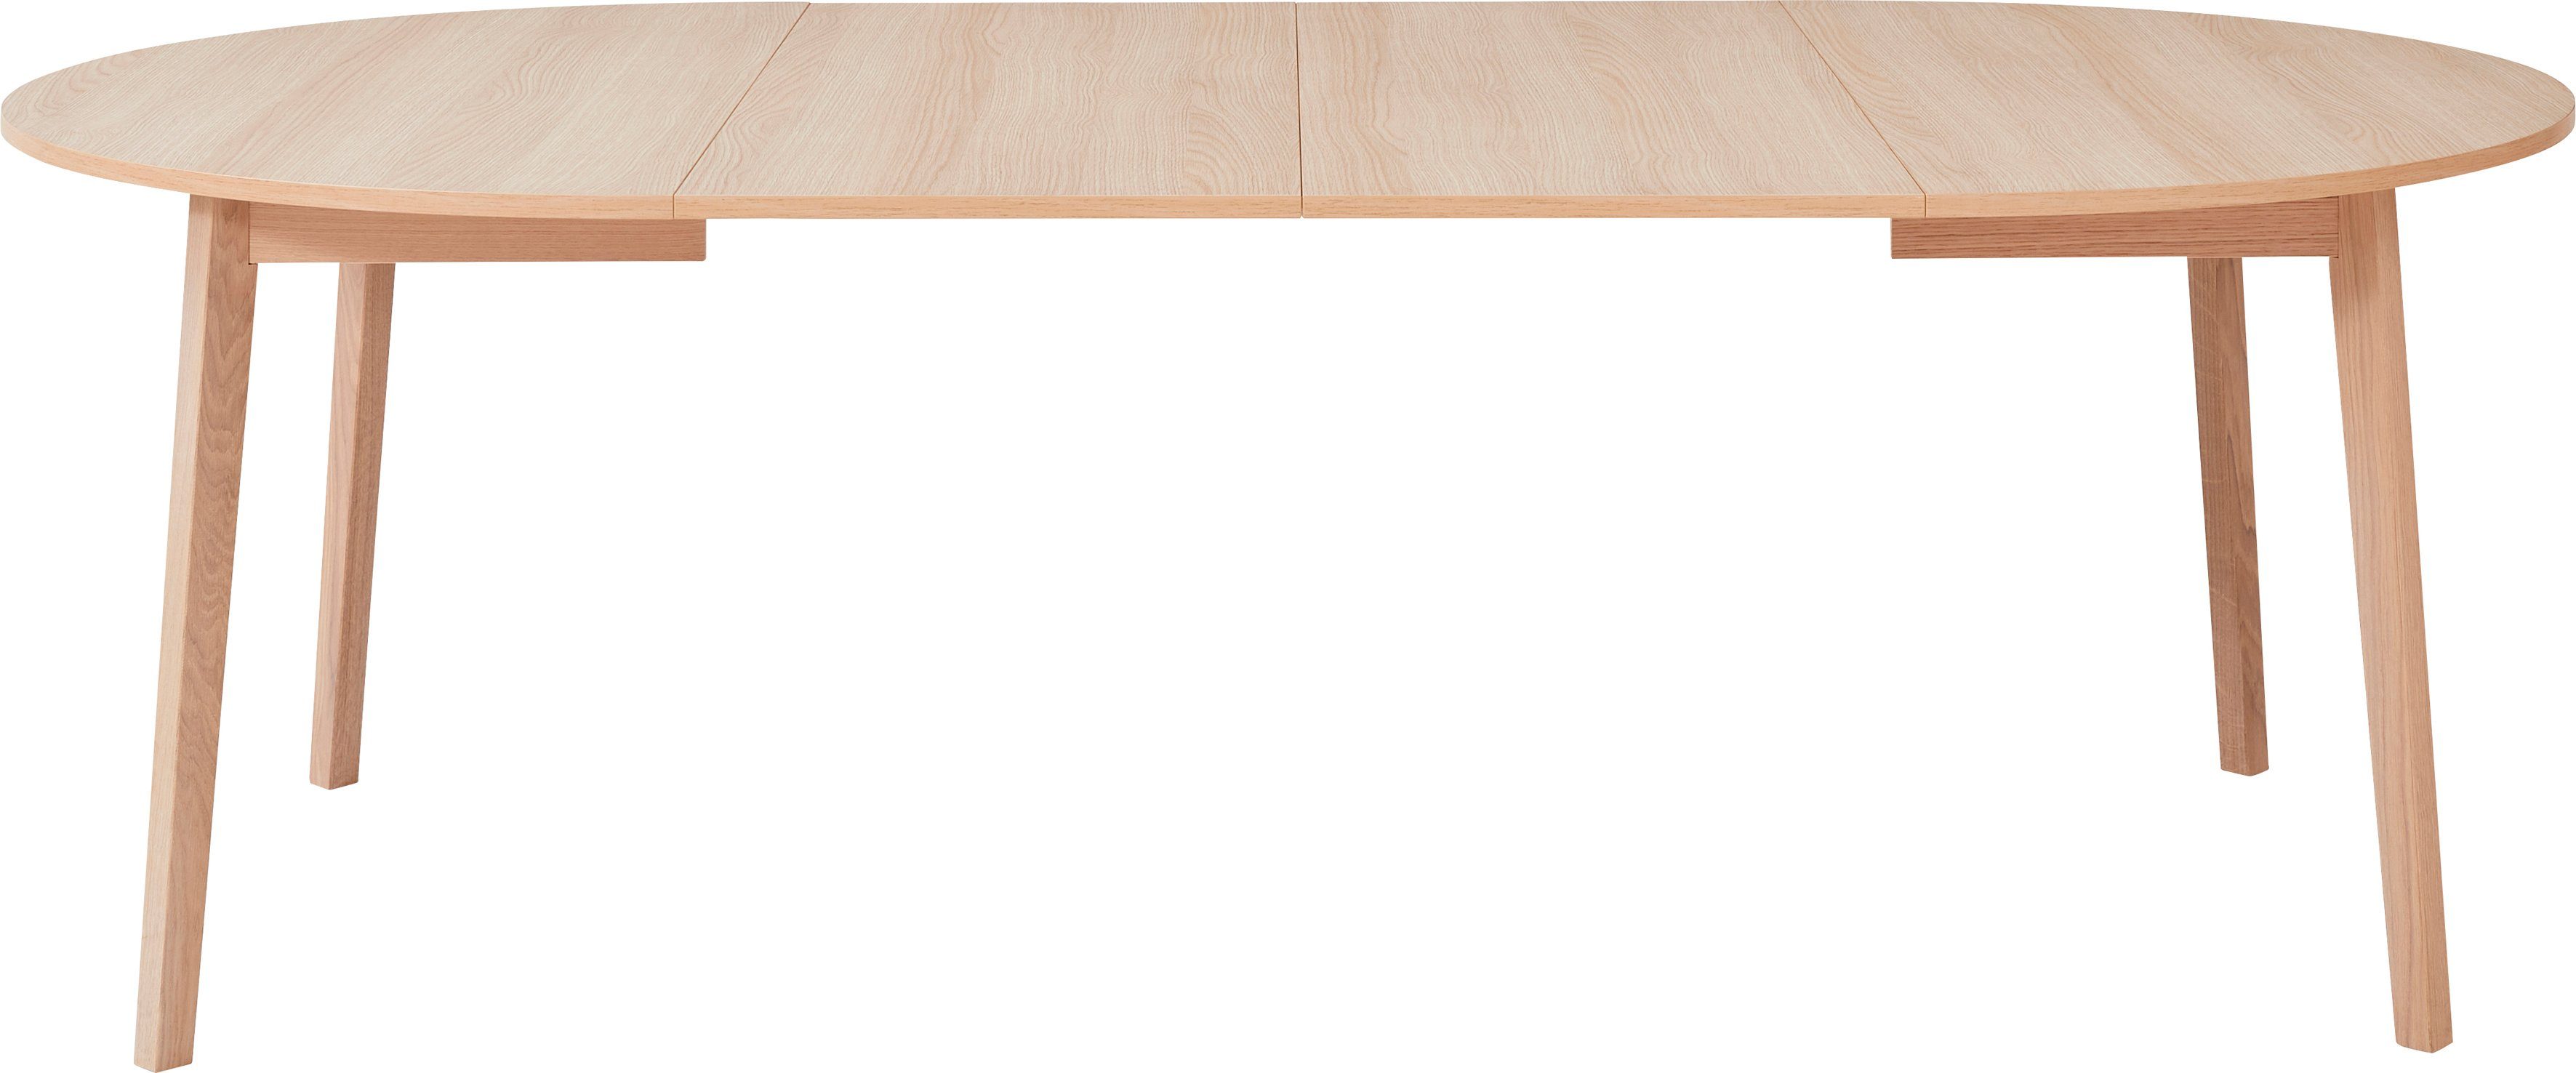 2 Basic cm, Einlegeplatten inklusive aus Gestell by Single, Naturfarben Hammel Ø130/228 Esstisch Hammel Furniture Massivholz,